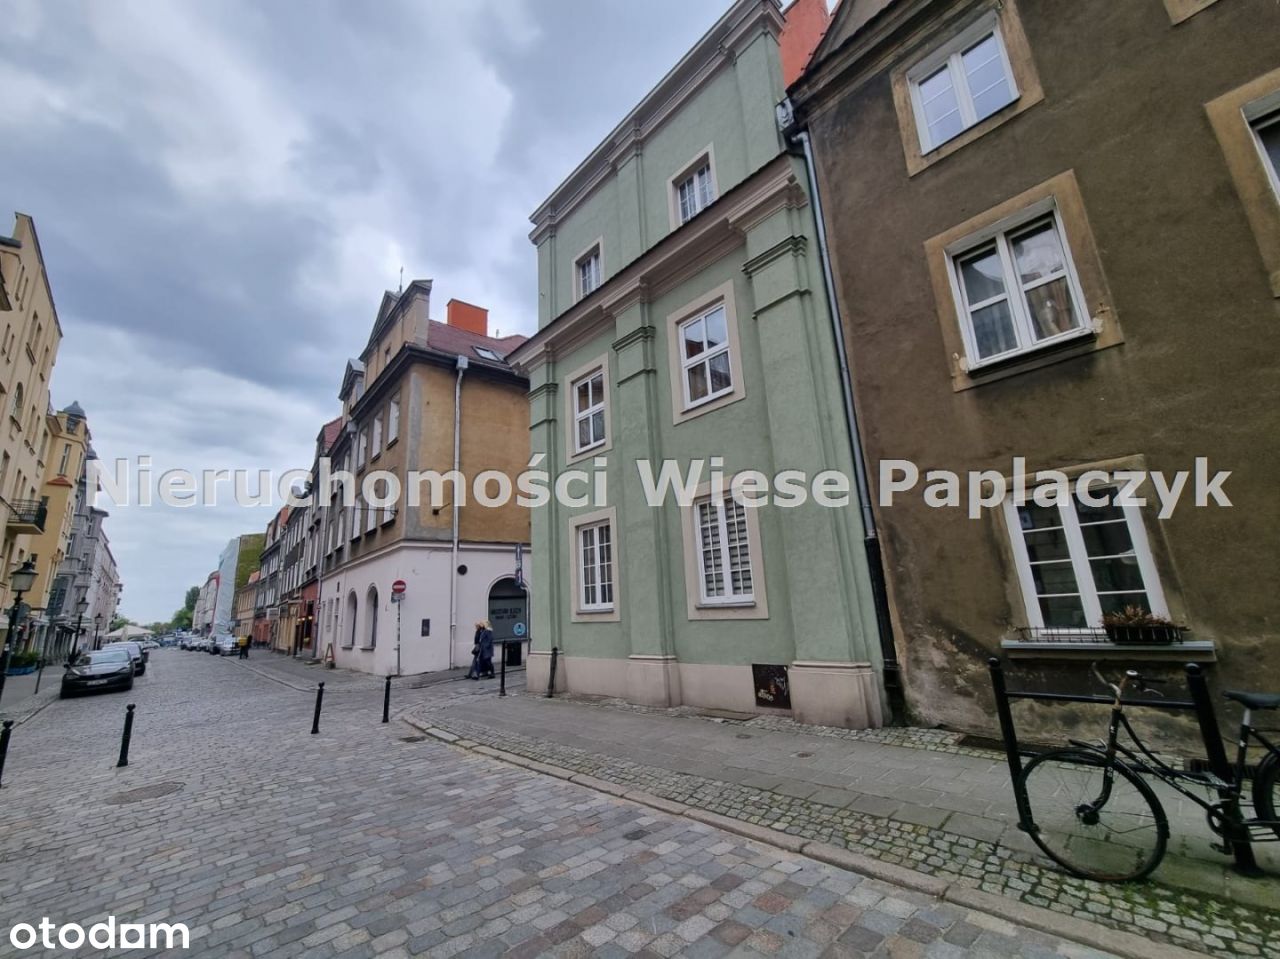 Mieszkanie przy płycie Starego Rynku!PoznańCentrum